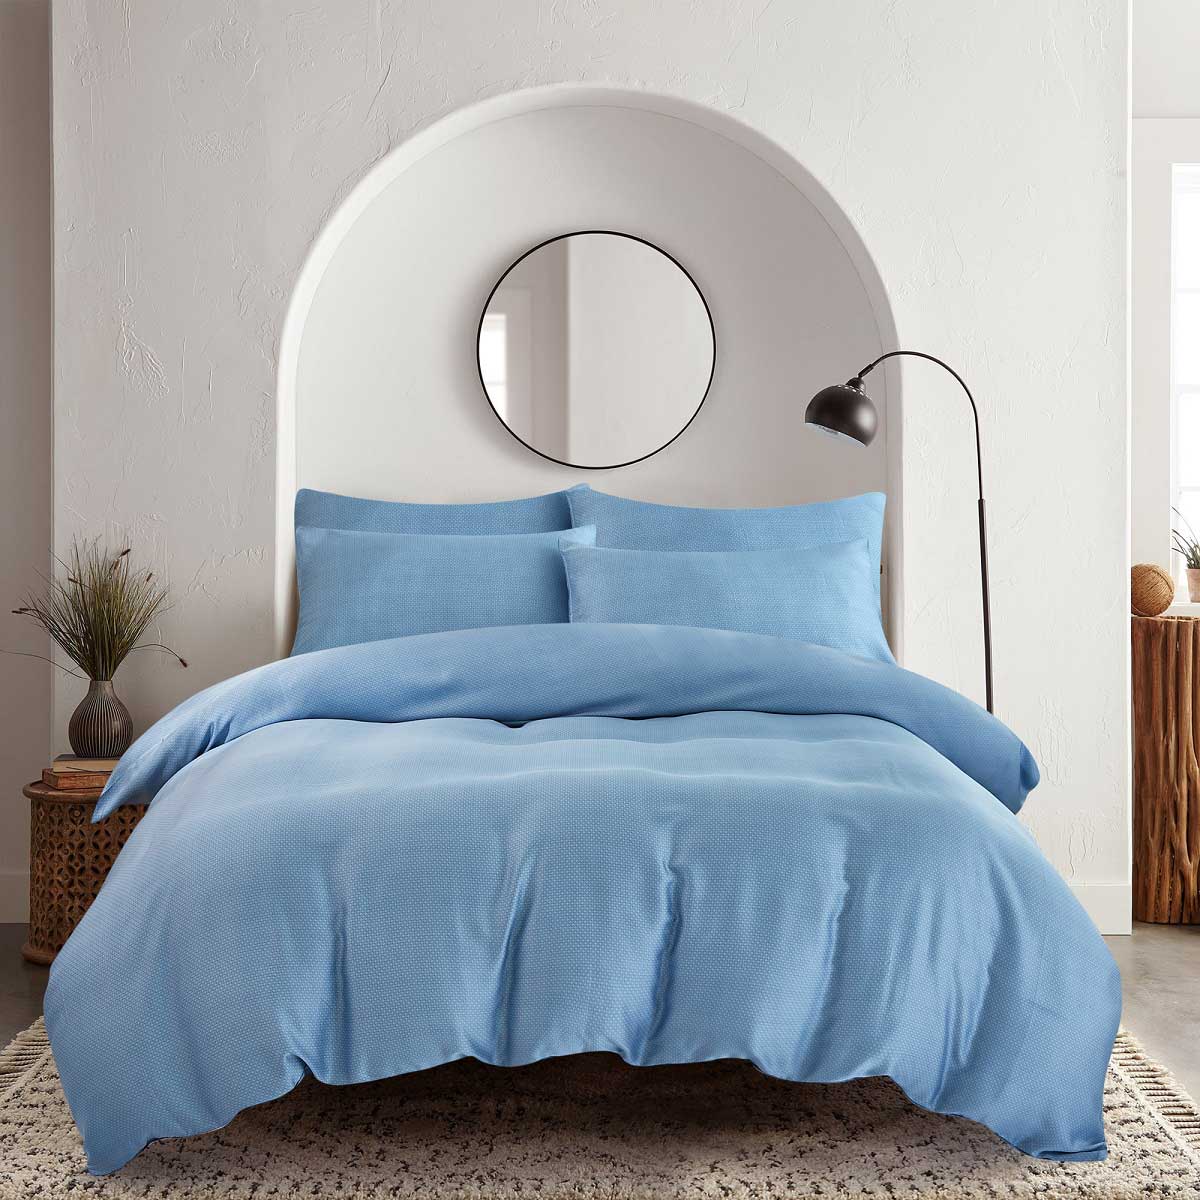 Комплект постельного белья 1,5-спальный Pappel smooth blue комплект постельного белья семейный pappel smooth blue